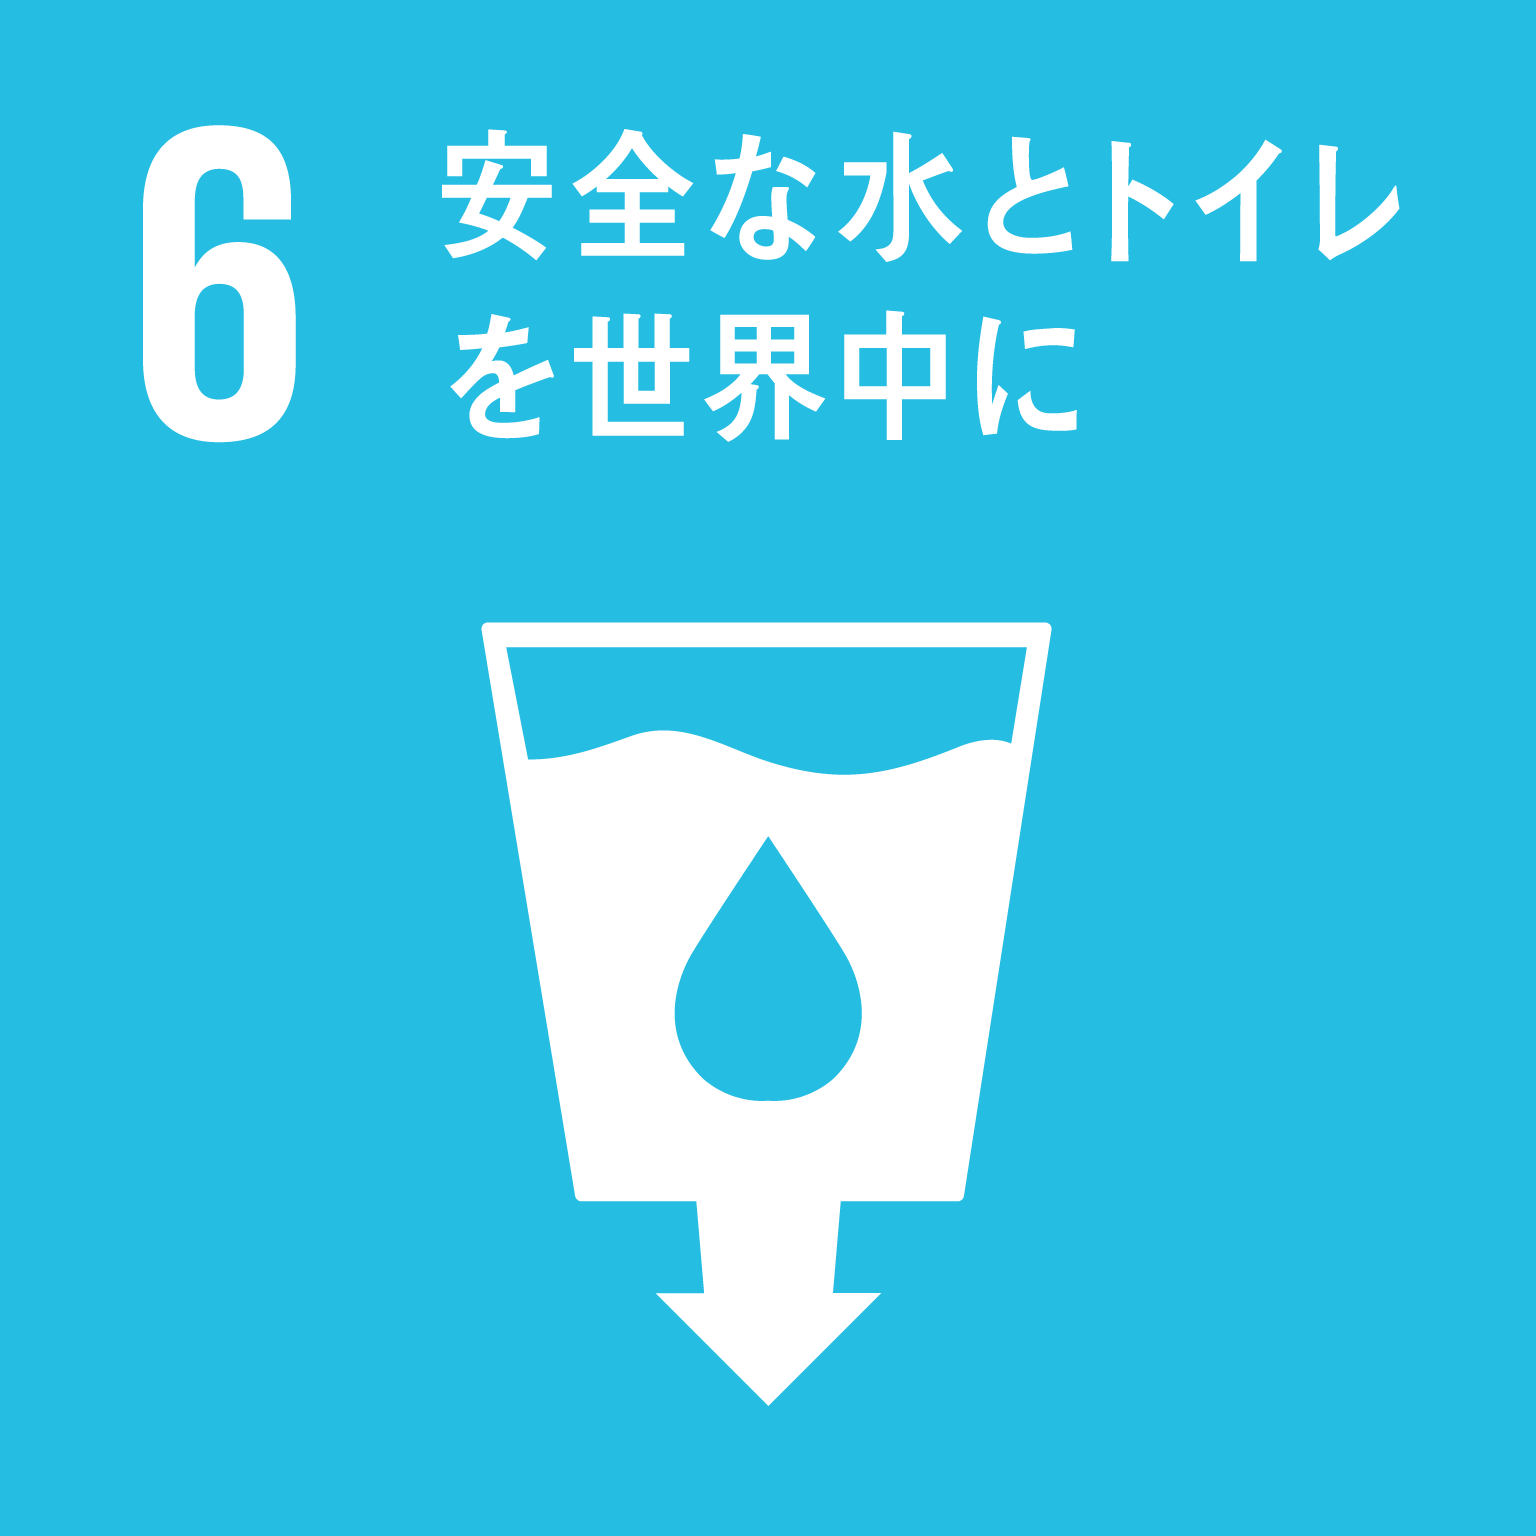 「6.安全な水とトイレを世界中に」の文字と目標6のロゴ